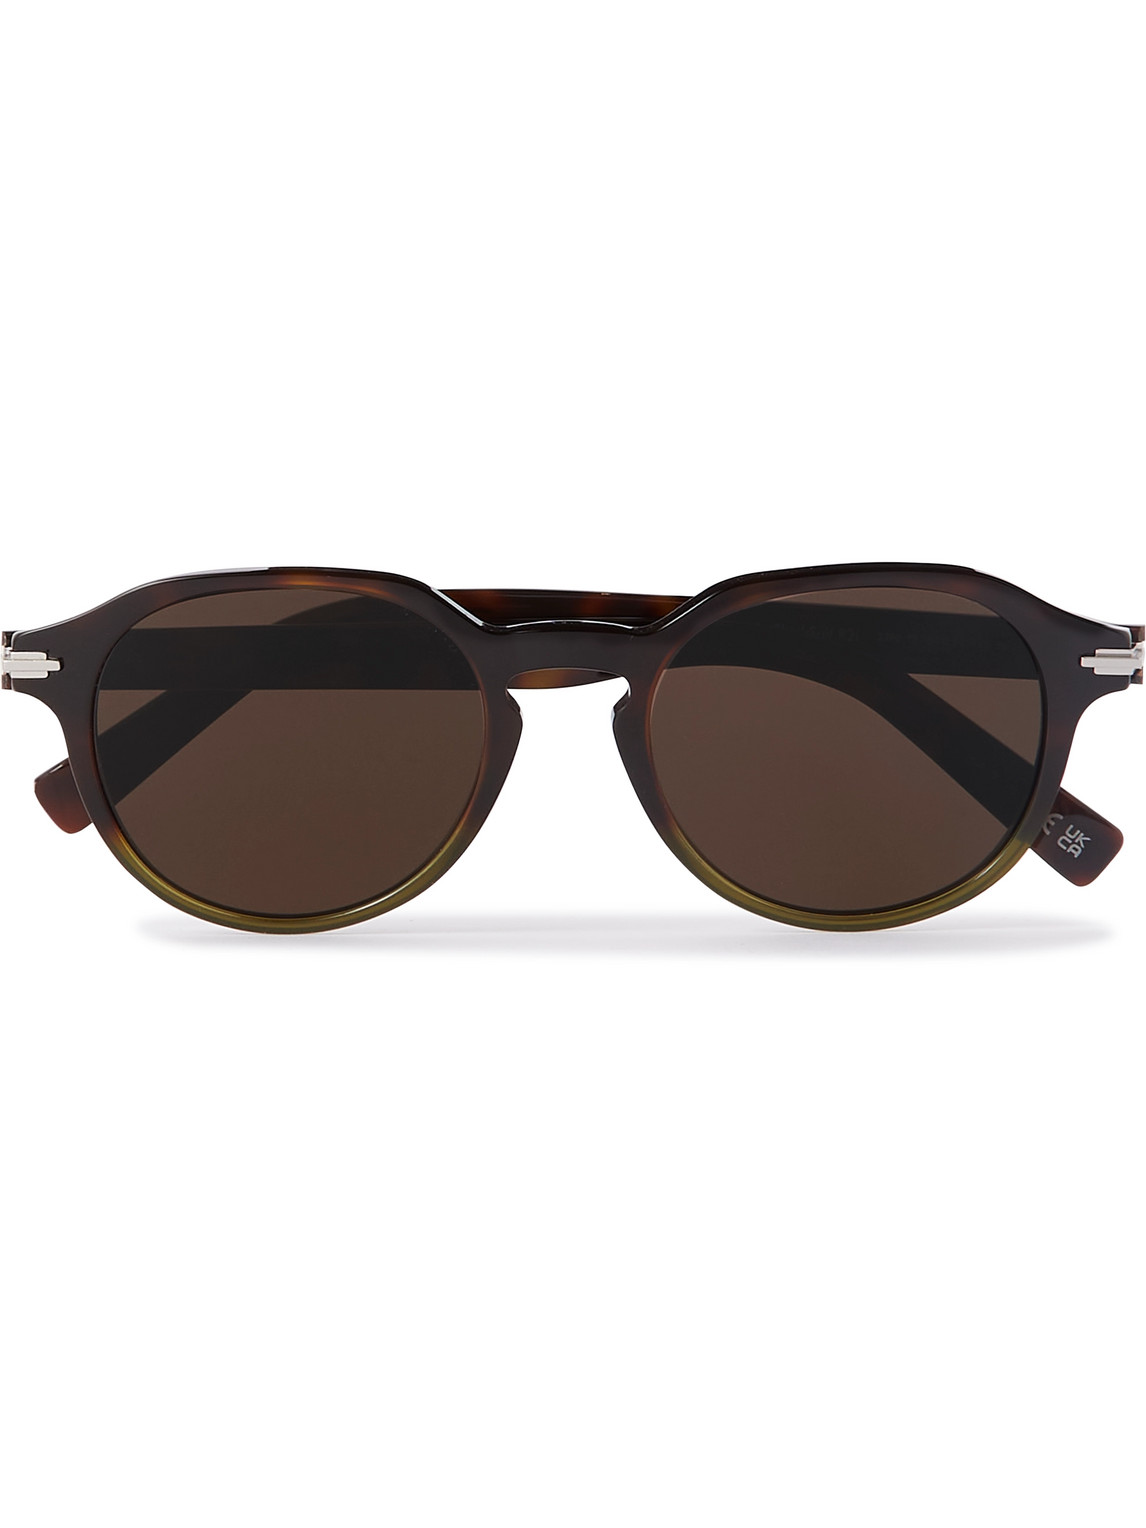 Dior Eyewear - DiorBlackSuit R2I Round-Frame Tortoiseshell Acetate Sunglasses - Men - Brown von Dior Eyewear